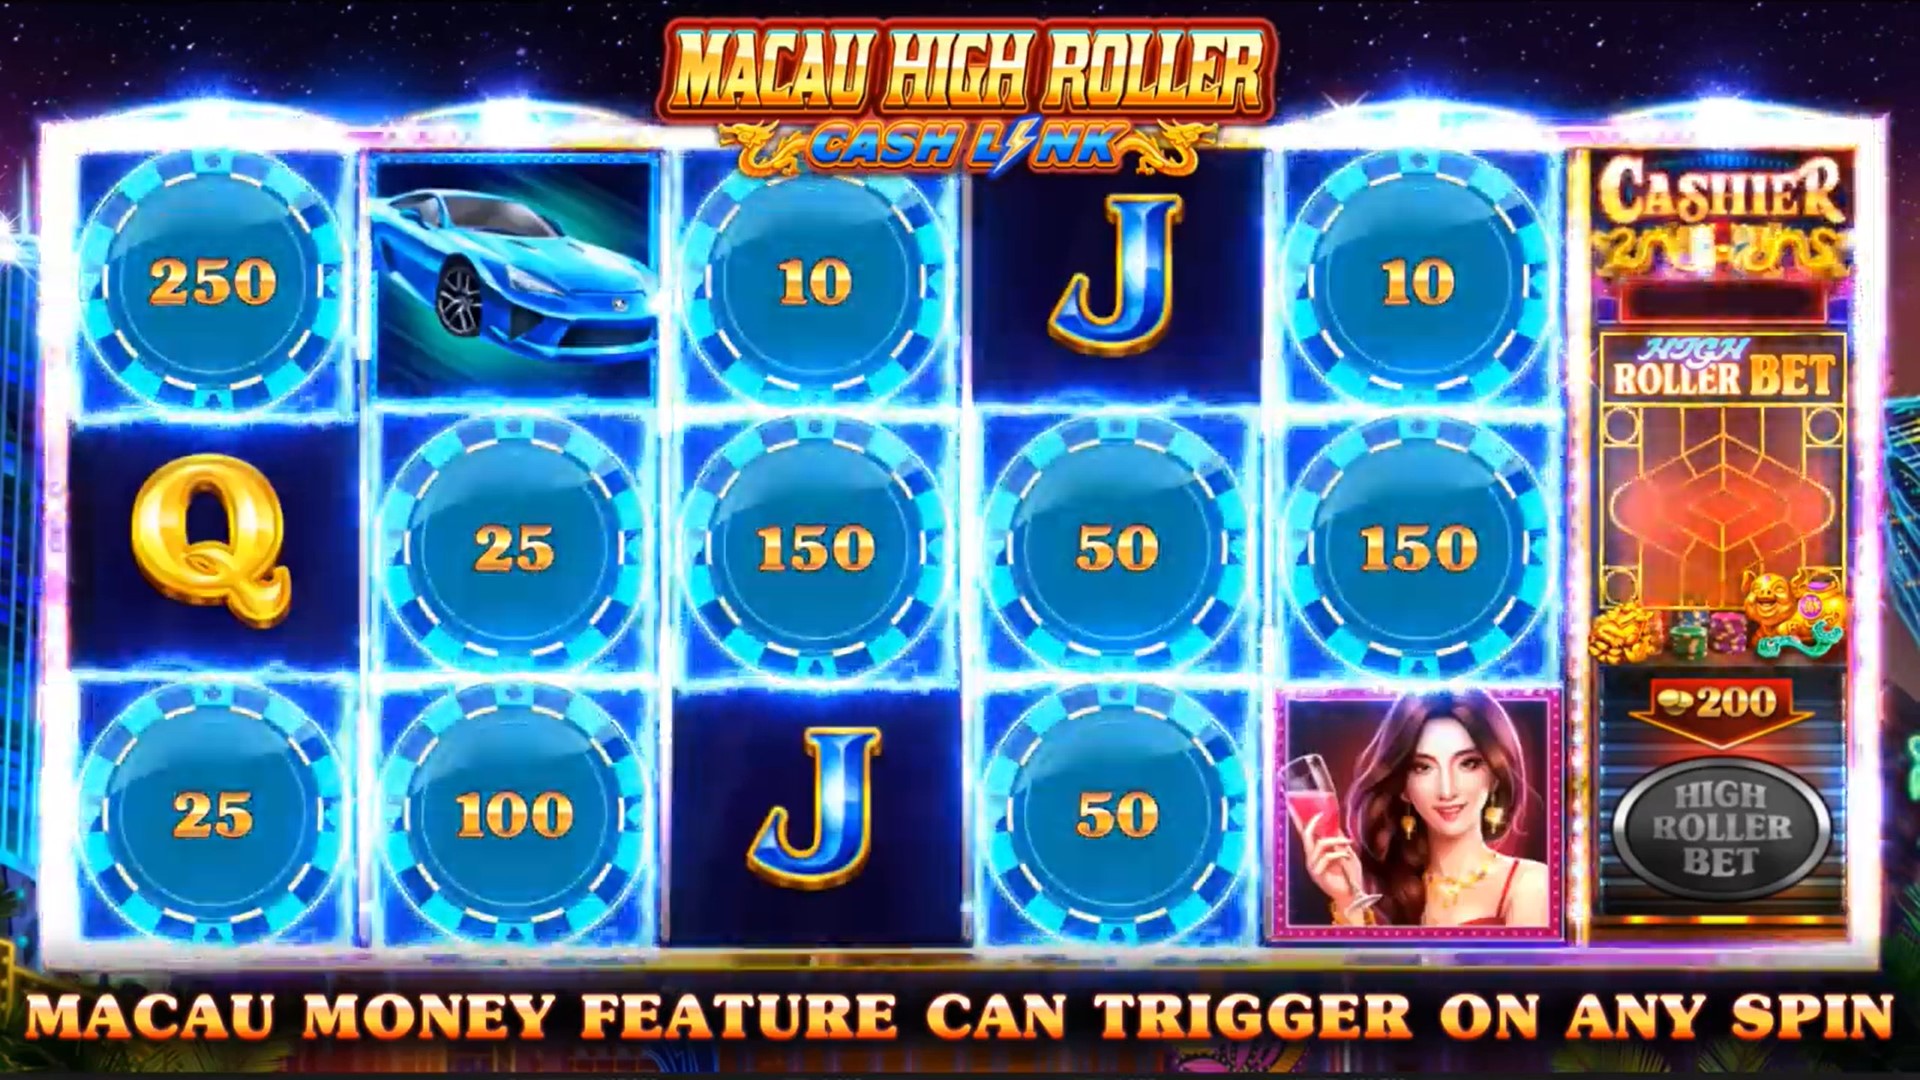 Macau High Roller money feature iSoftBet